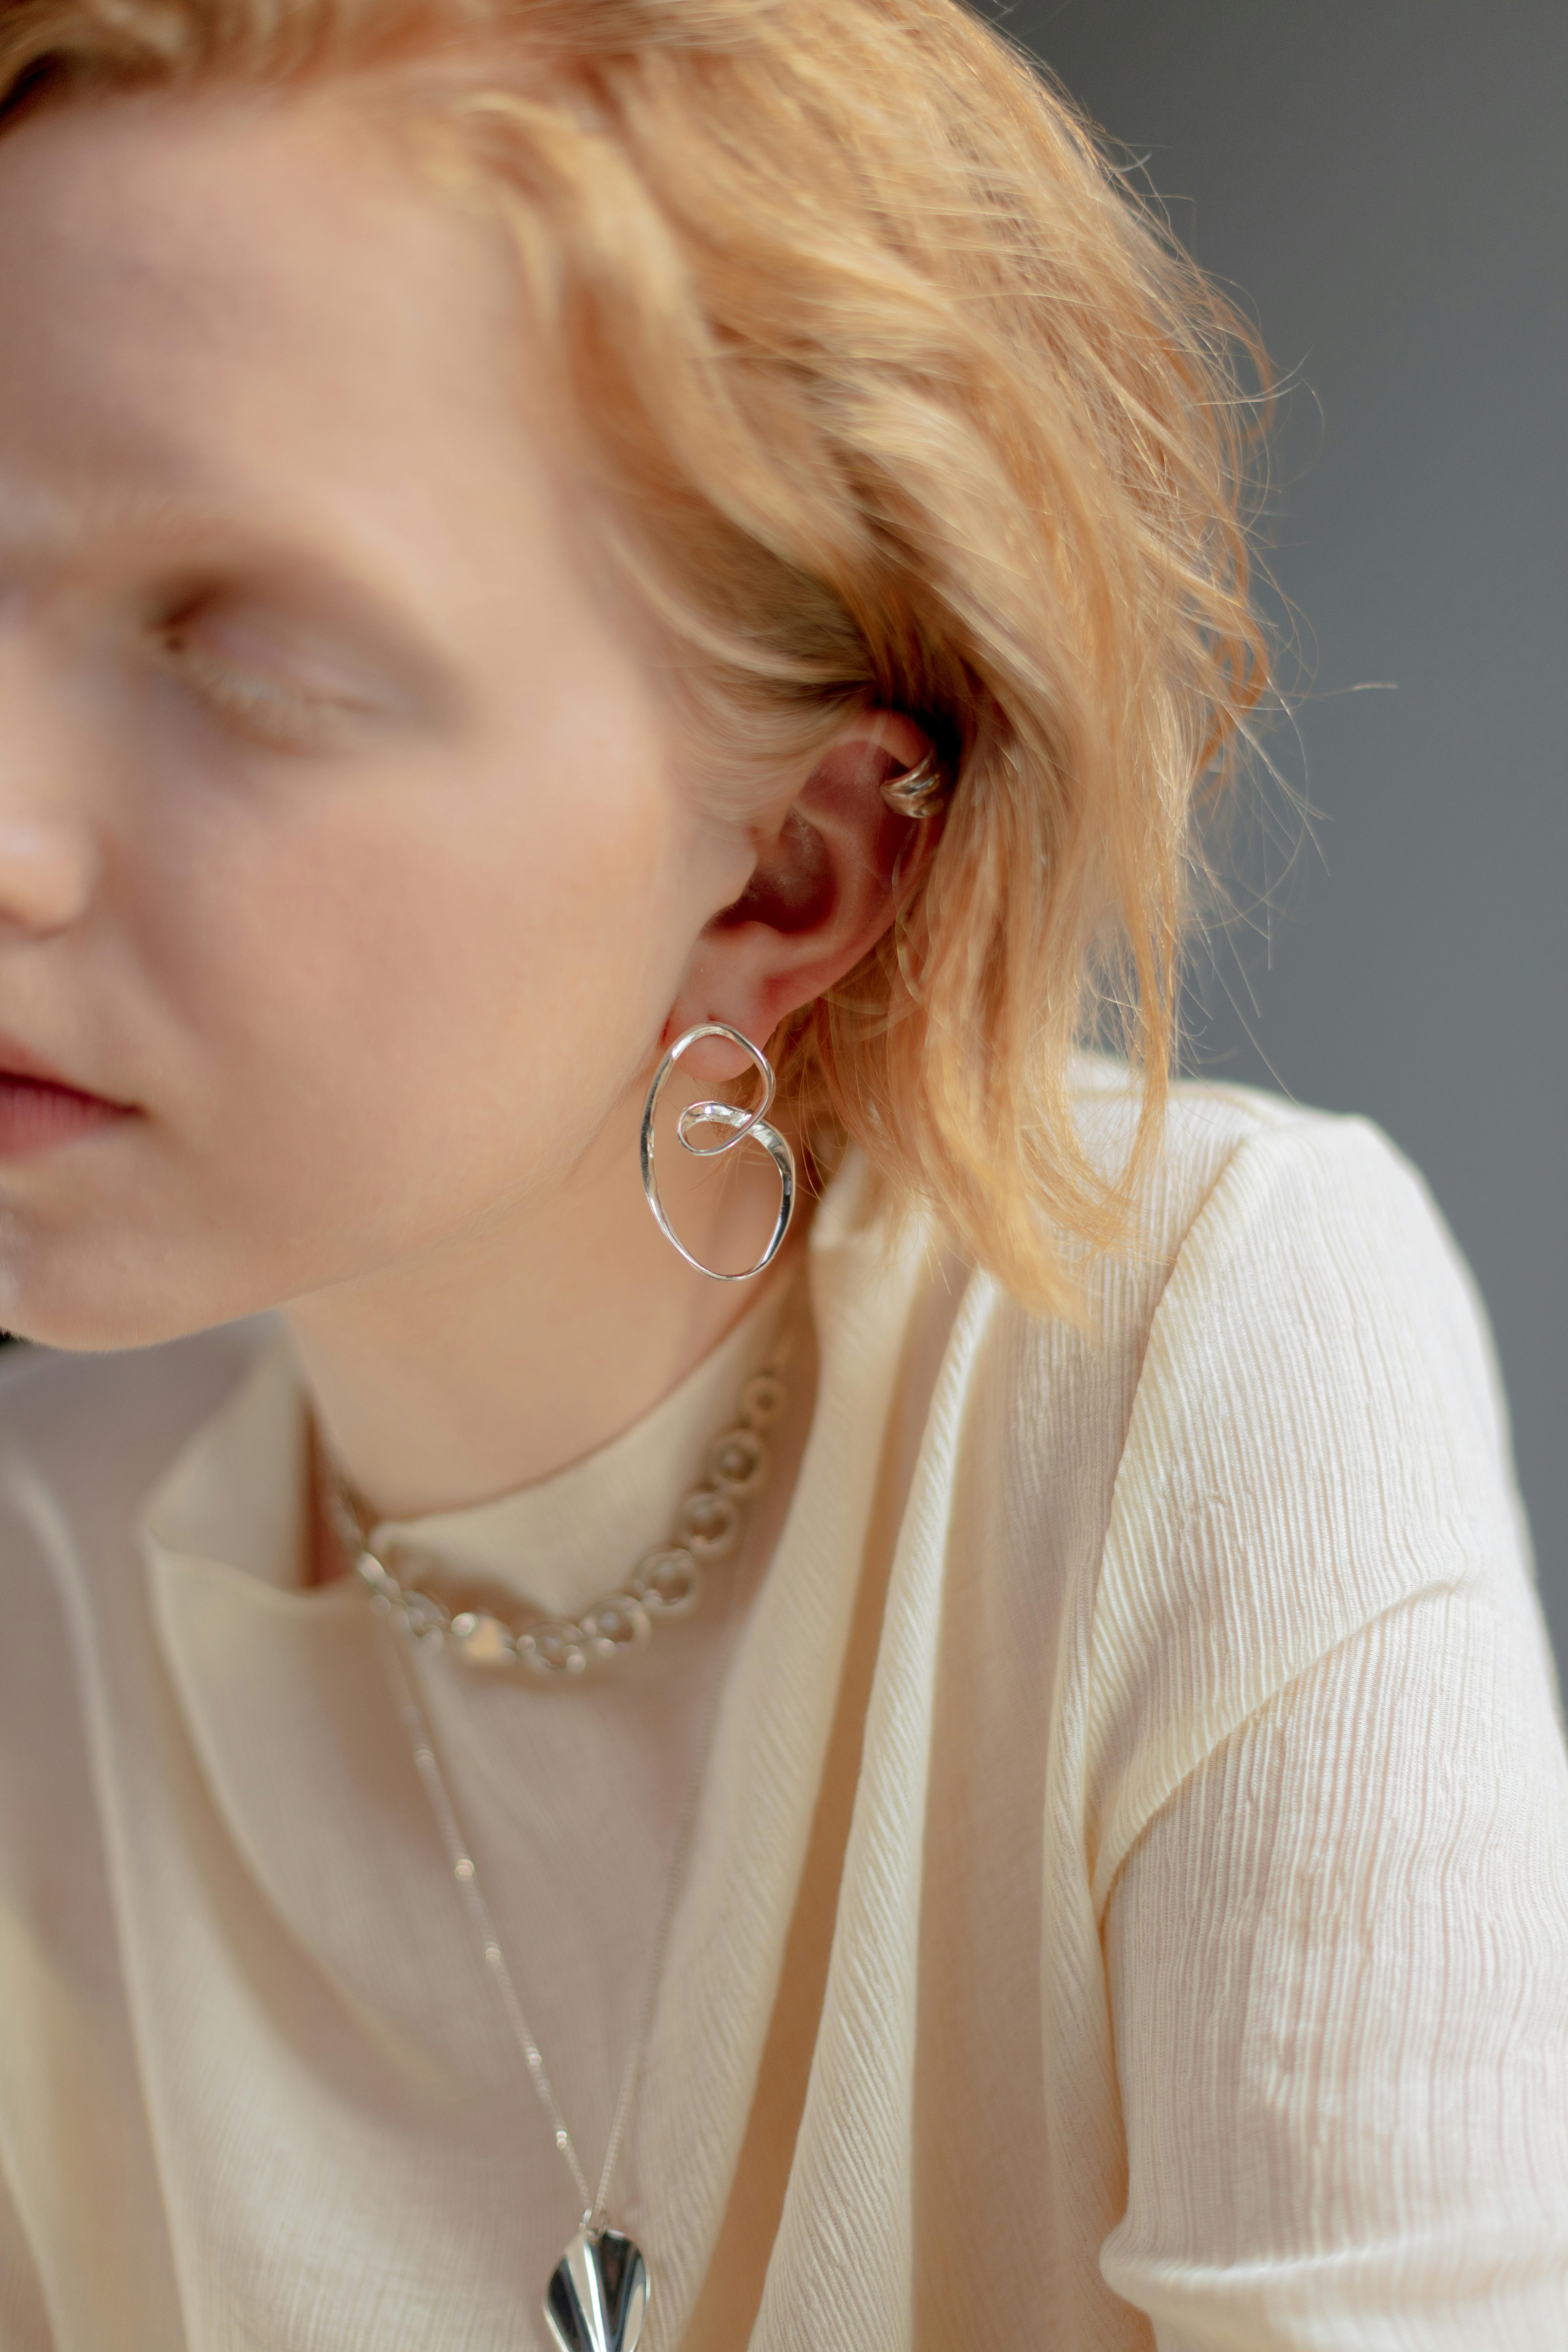 woman wearing silver earring